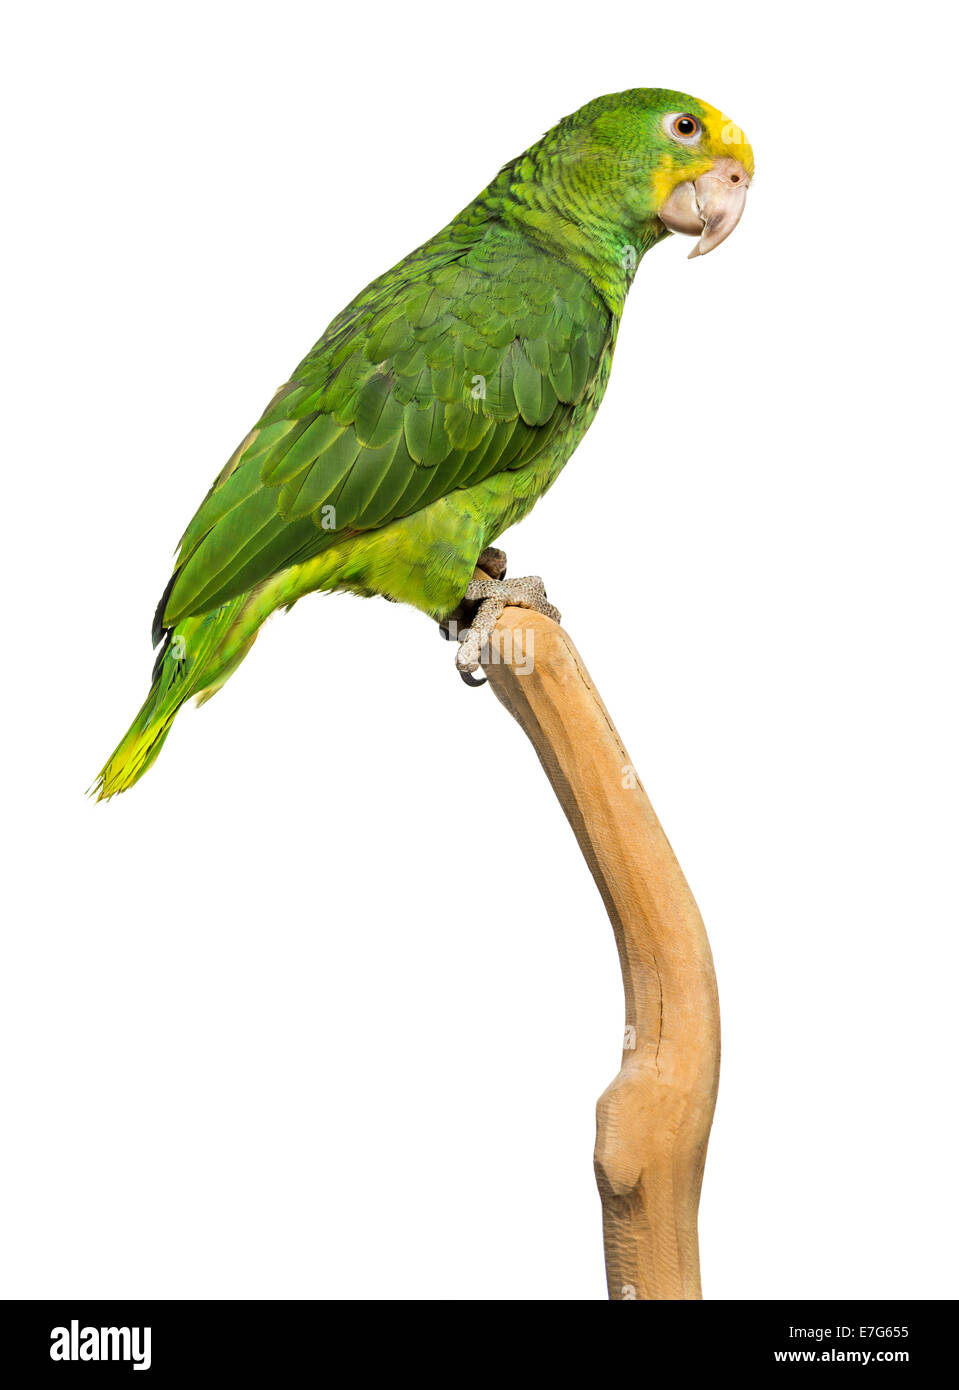 Gefährdeter papagei Ausgeschnittene Stockfotos und -bilder - Alamy